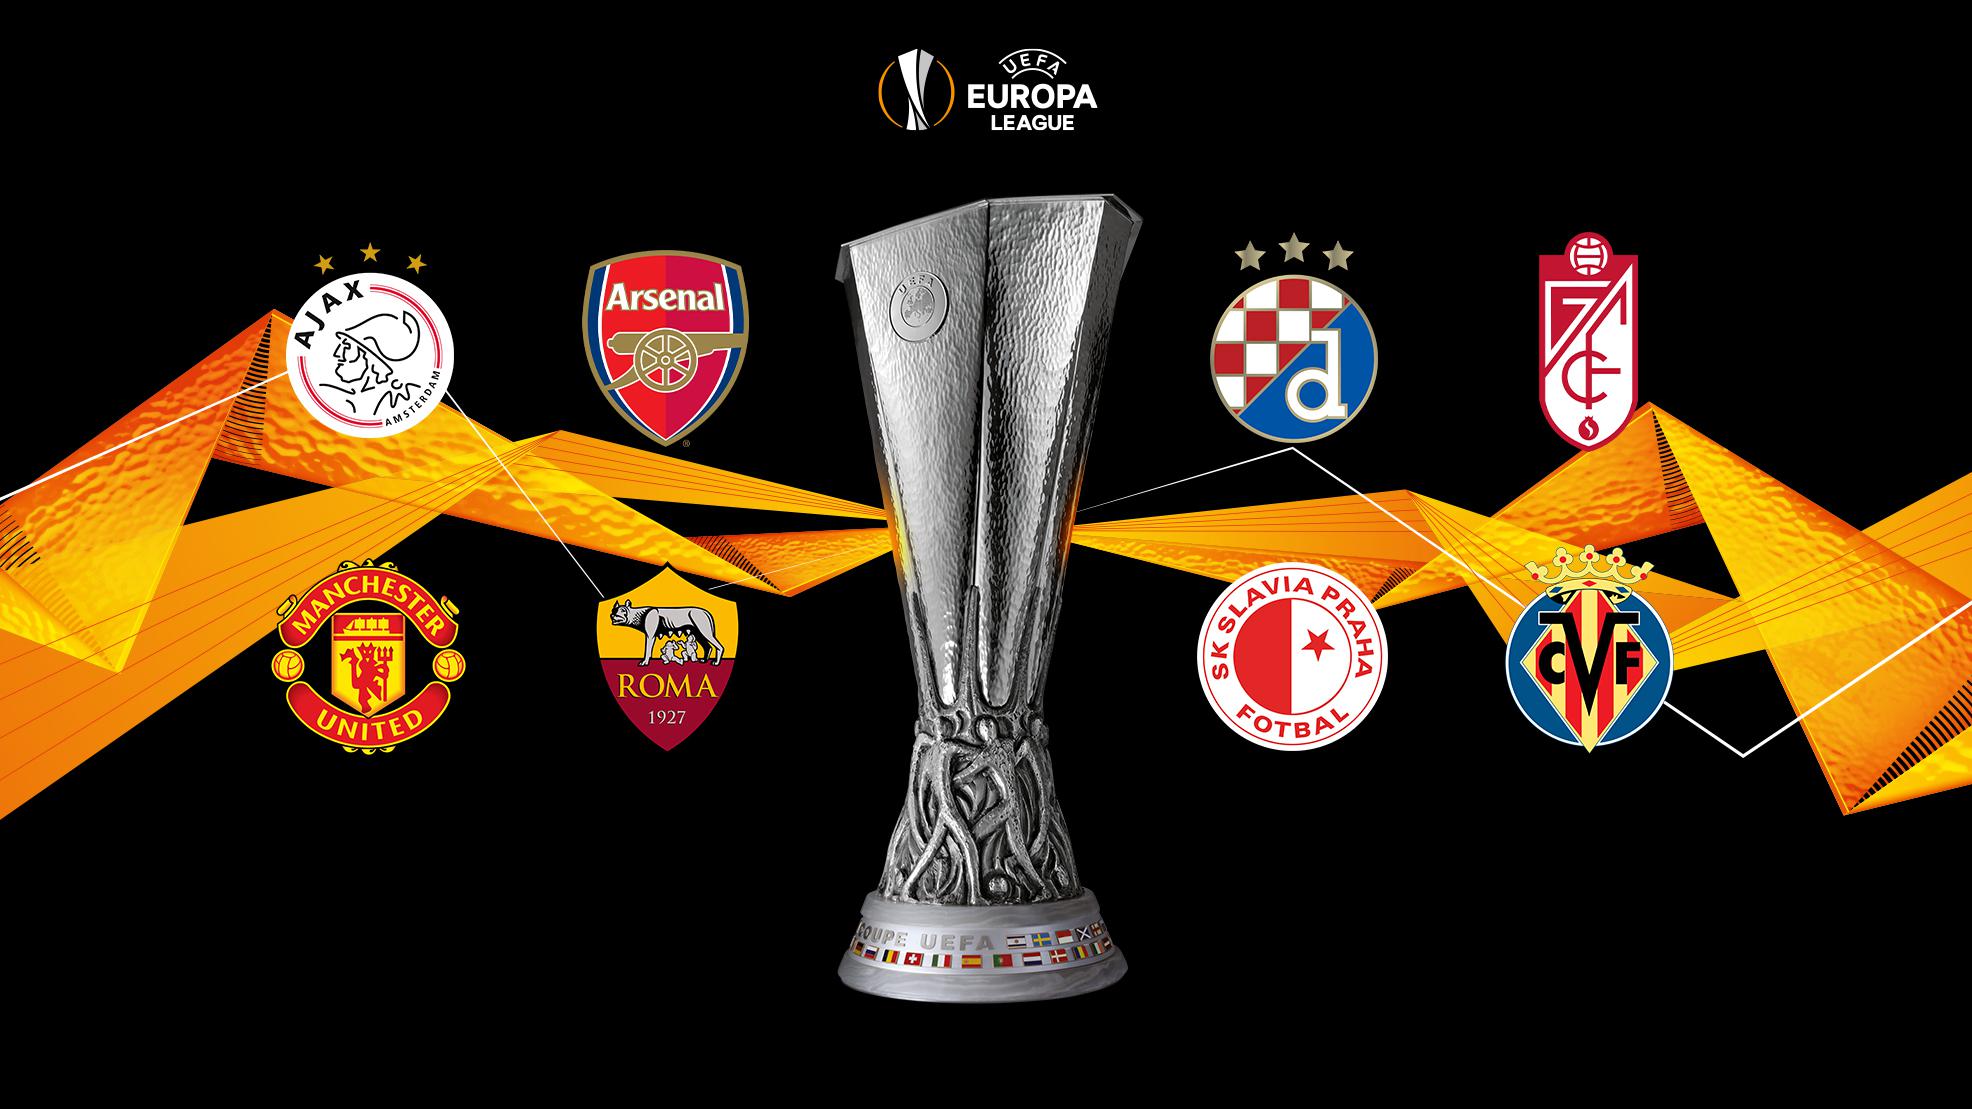 Liga europa uefa 2020-21 uefa europa league